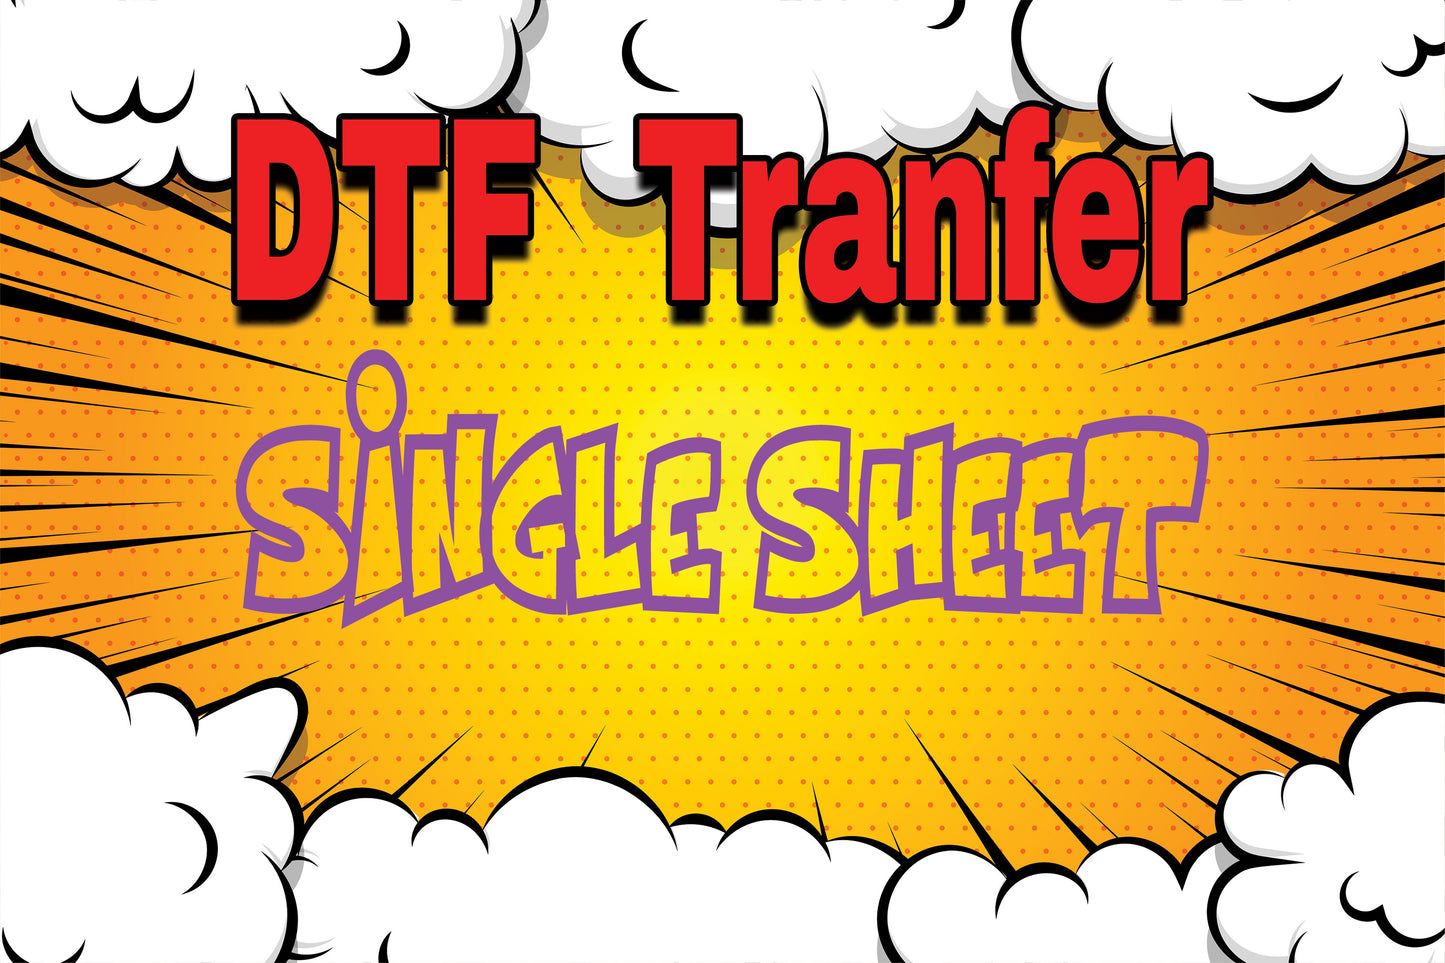 Single Sheet DTF Transfers